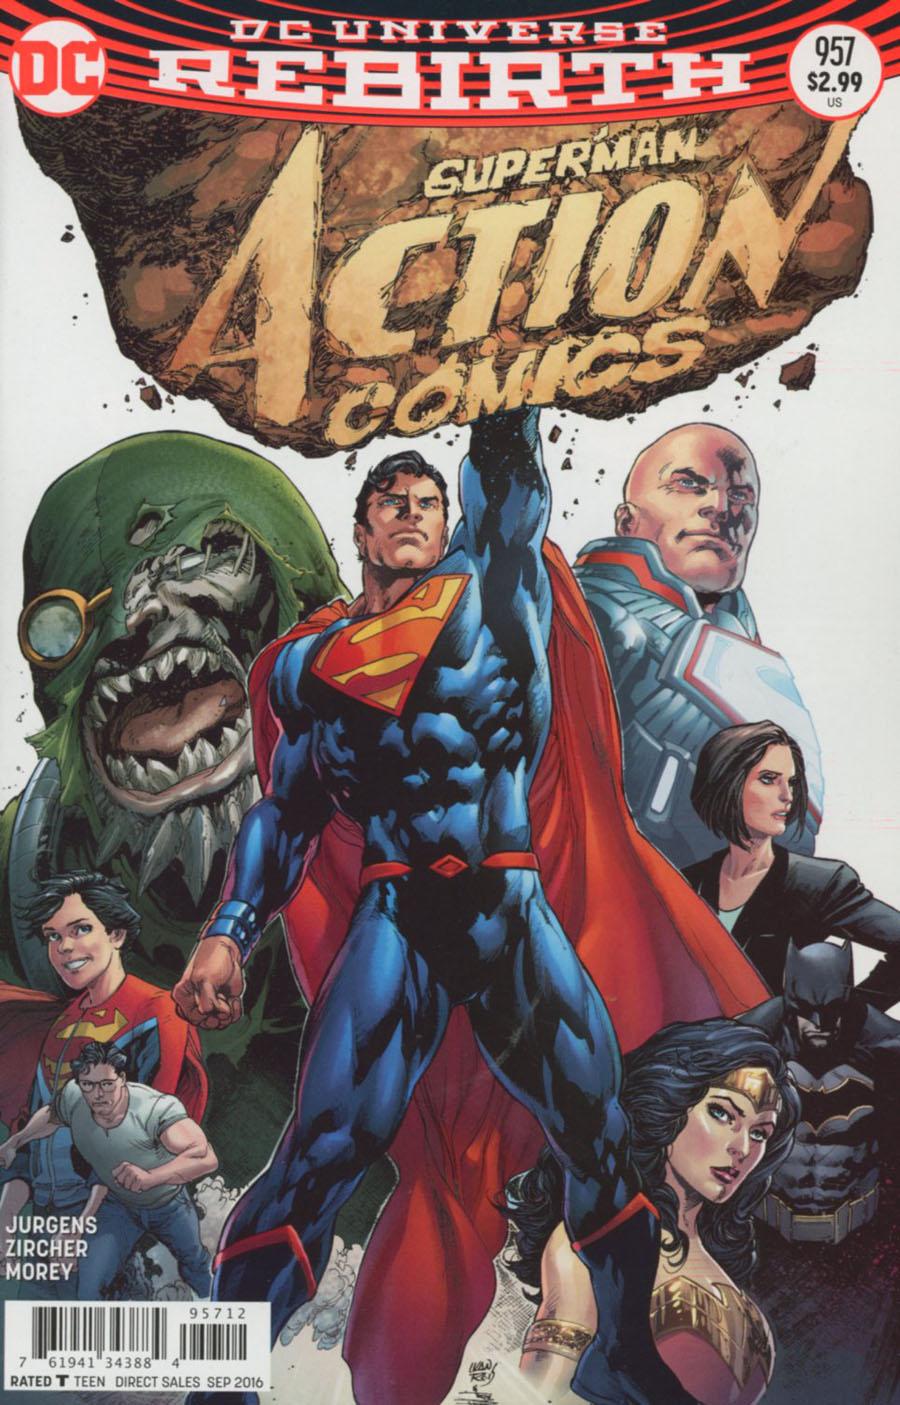 Action Comics Vol. 2 #957